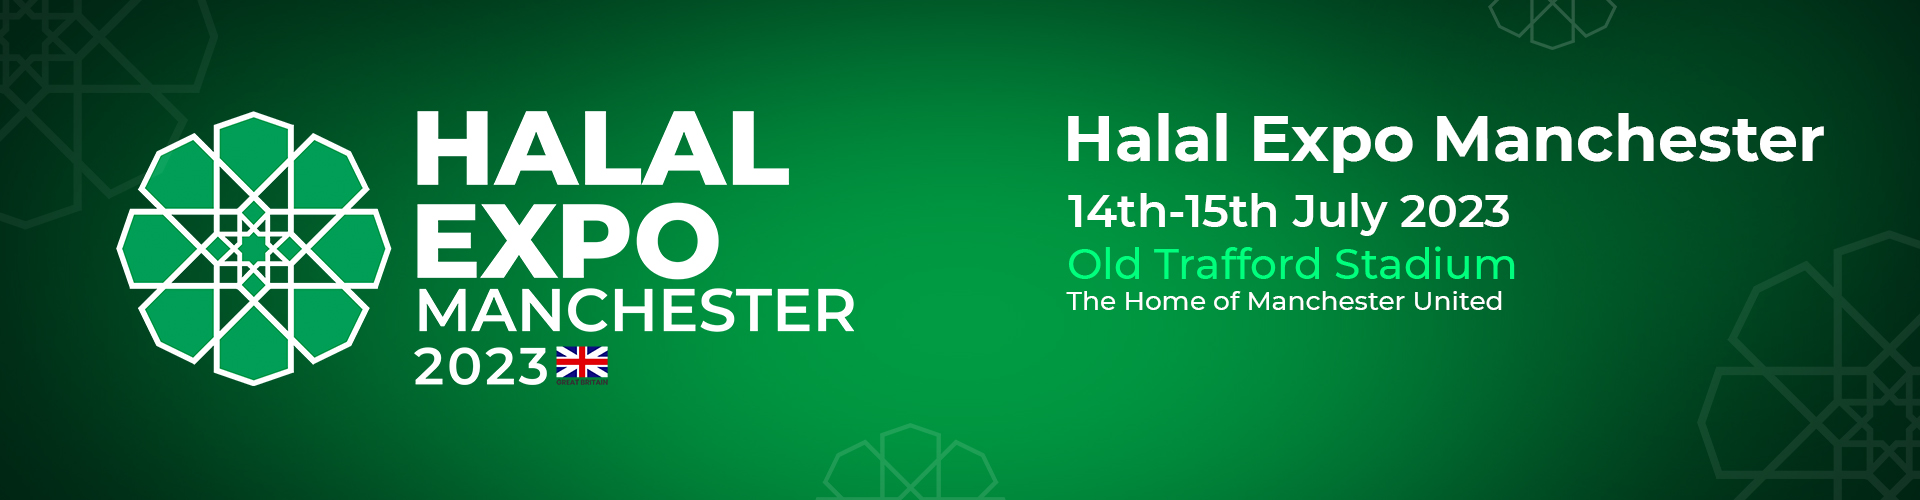 Halal website link banner- london website for manchester